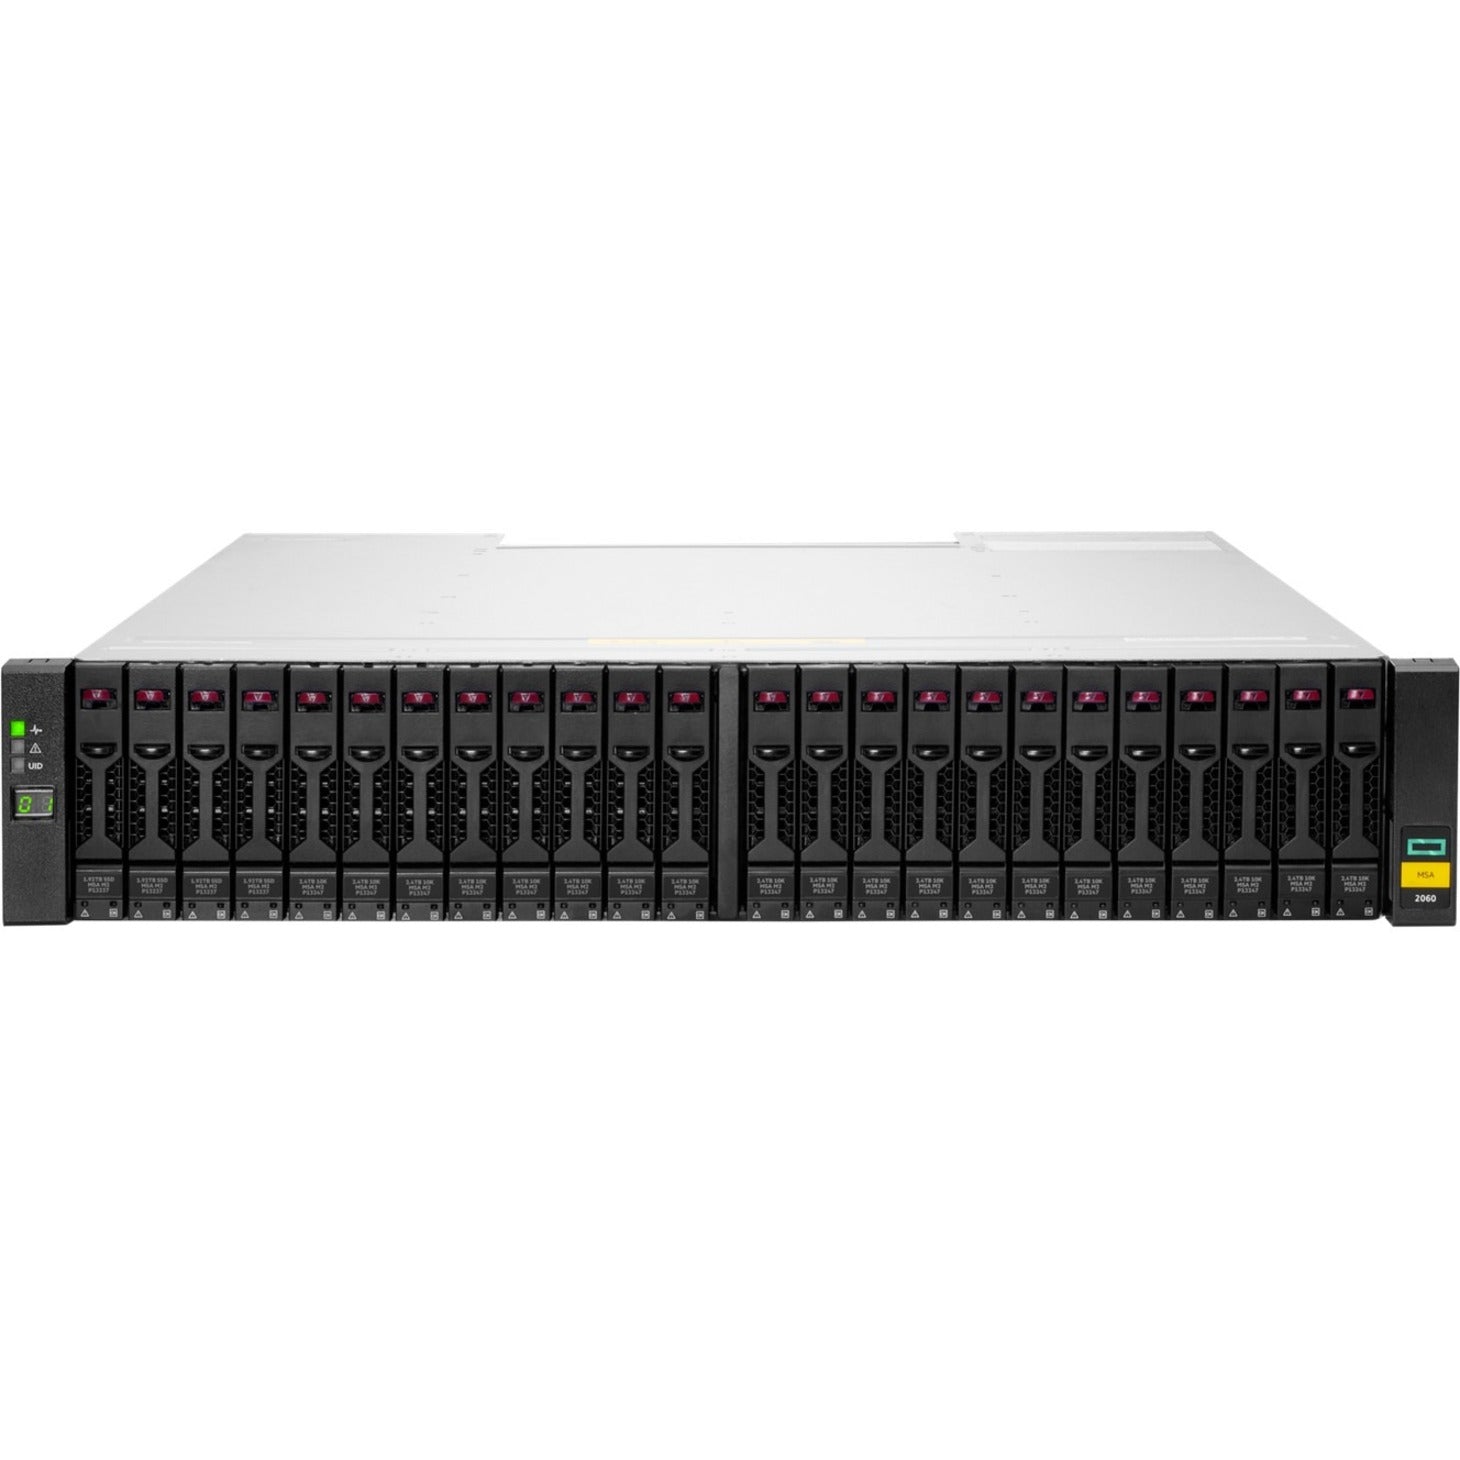 HPE MSA 2060 16Gb Fibre Channel SFF Storage [Discontinued]